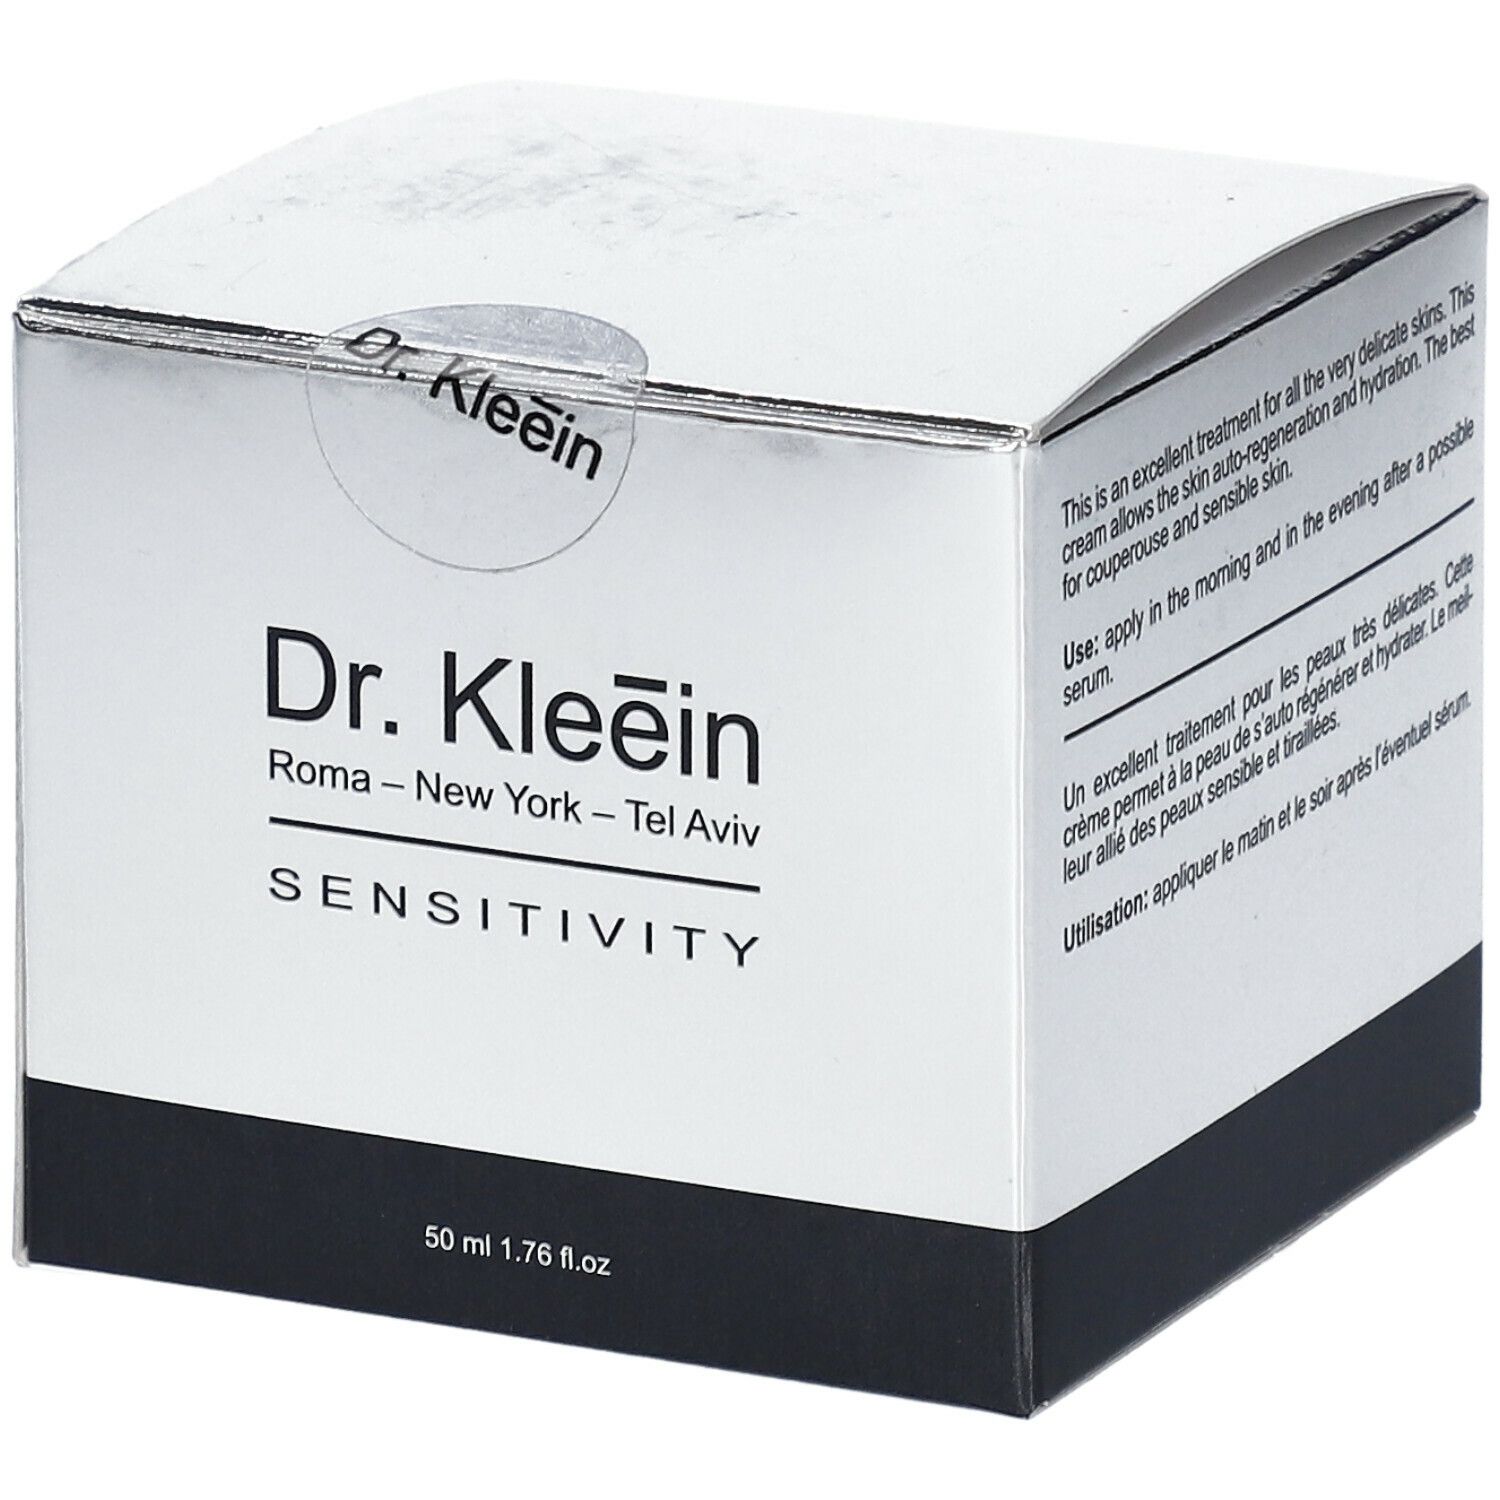 Dr. Kleein SENSITIVITY